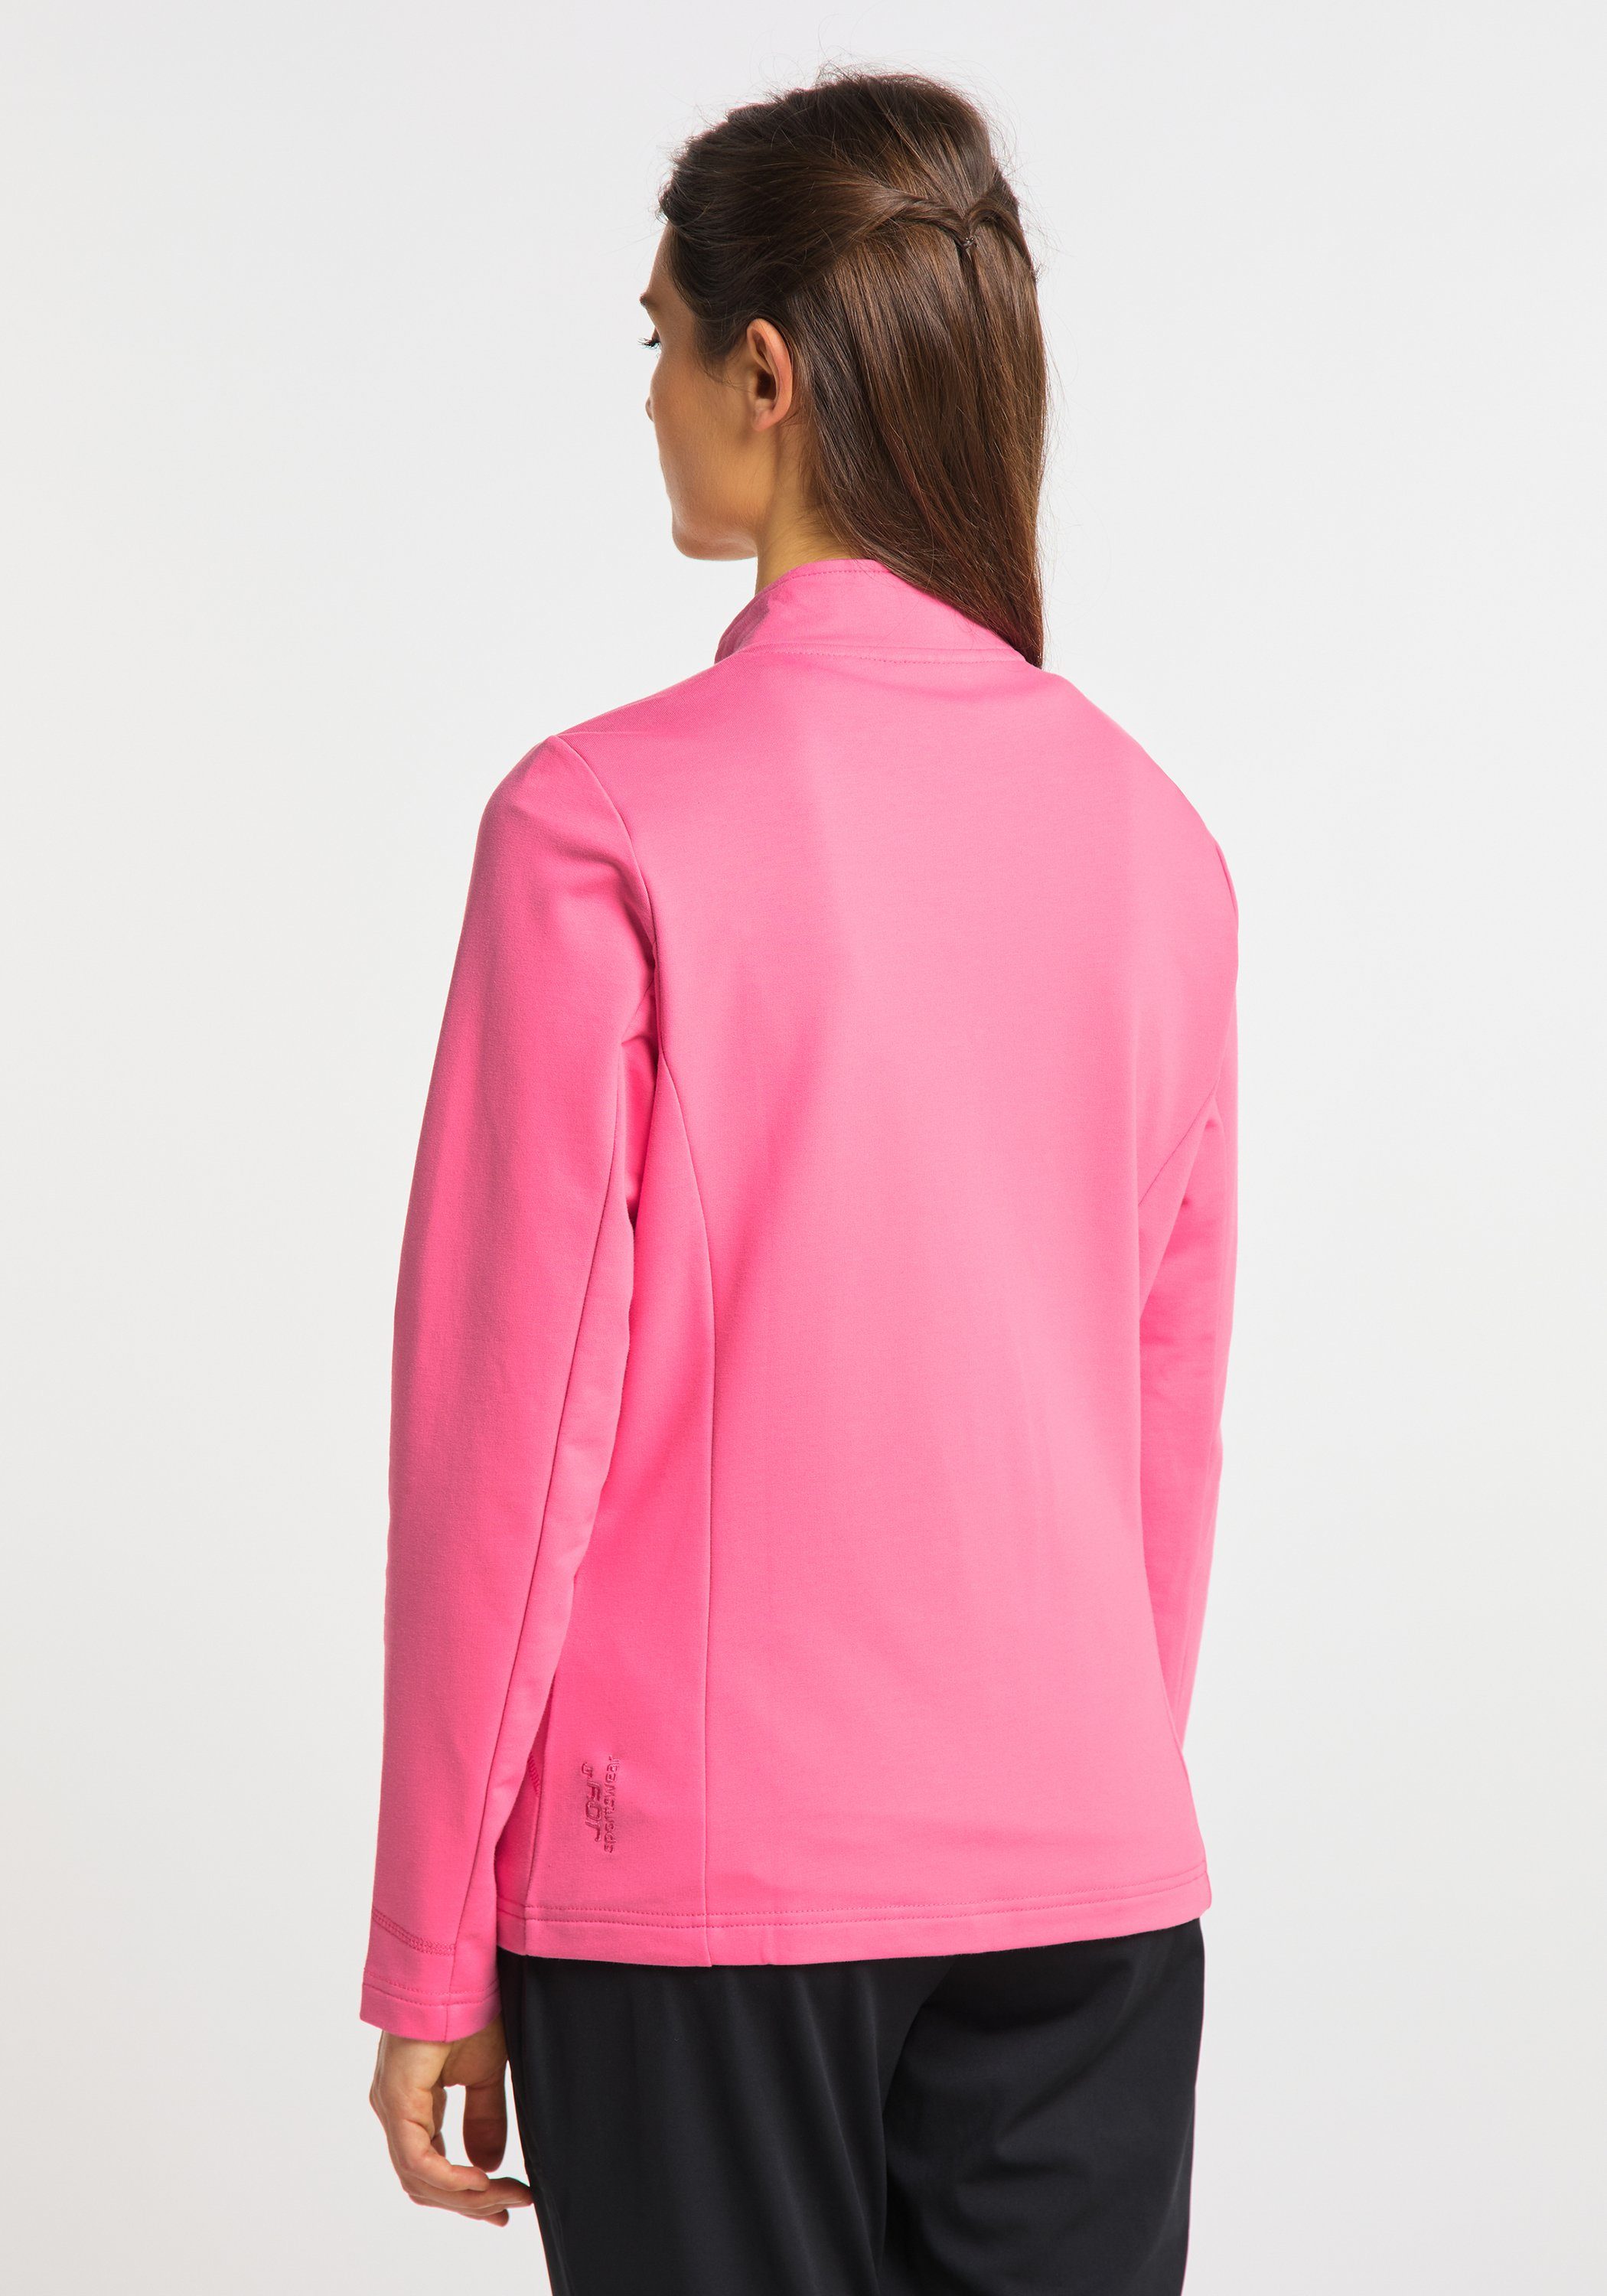 Jacke pink Trainingsjacke Sportswear DORIT camelia Joy